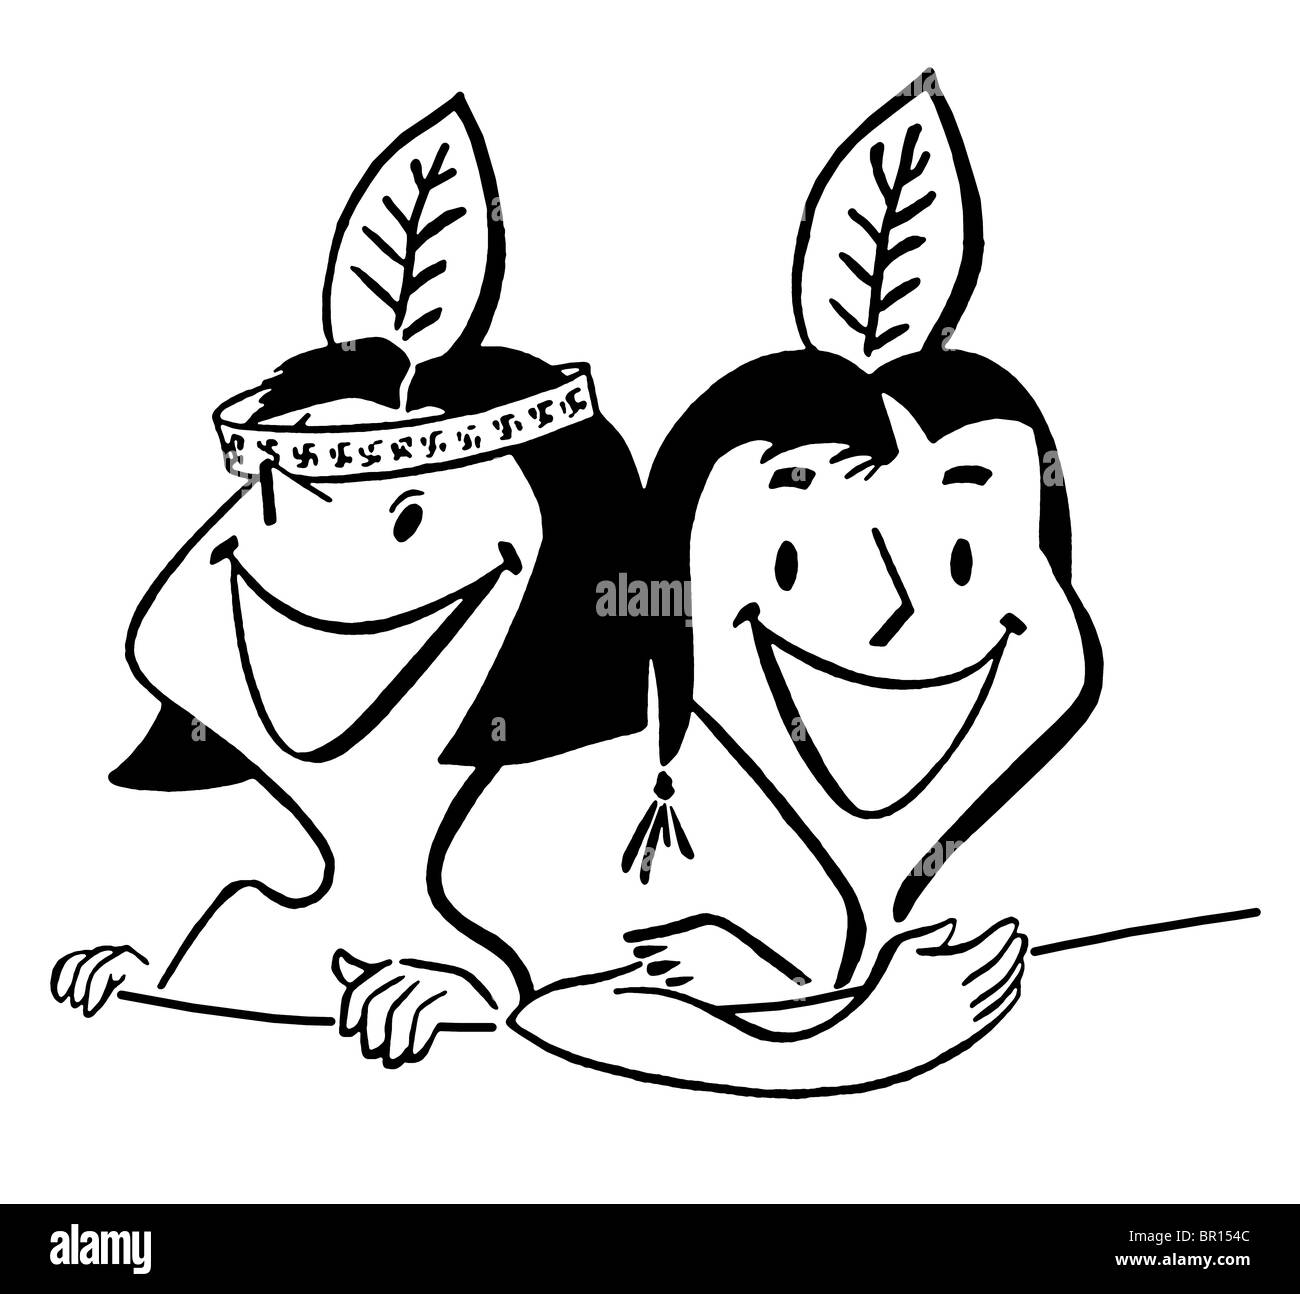 Una versione in bianco e nero di un cartone animato in stile vintage illustrazione di due giovani bambini Foto Stock